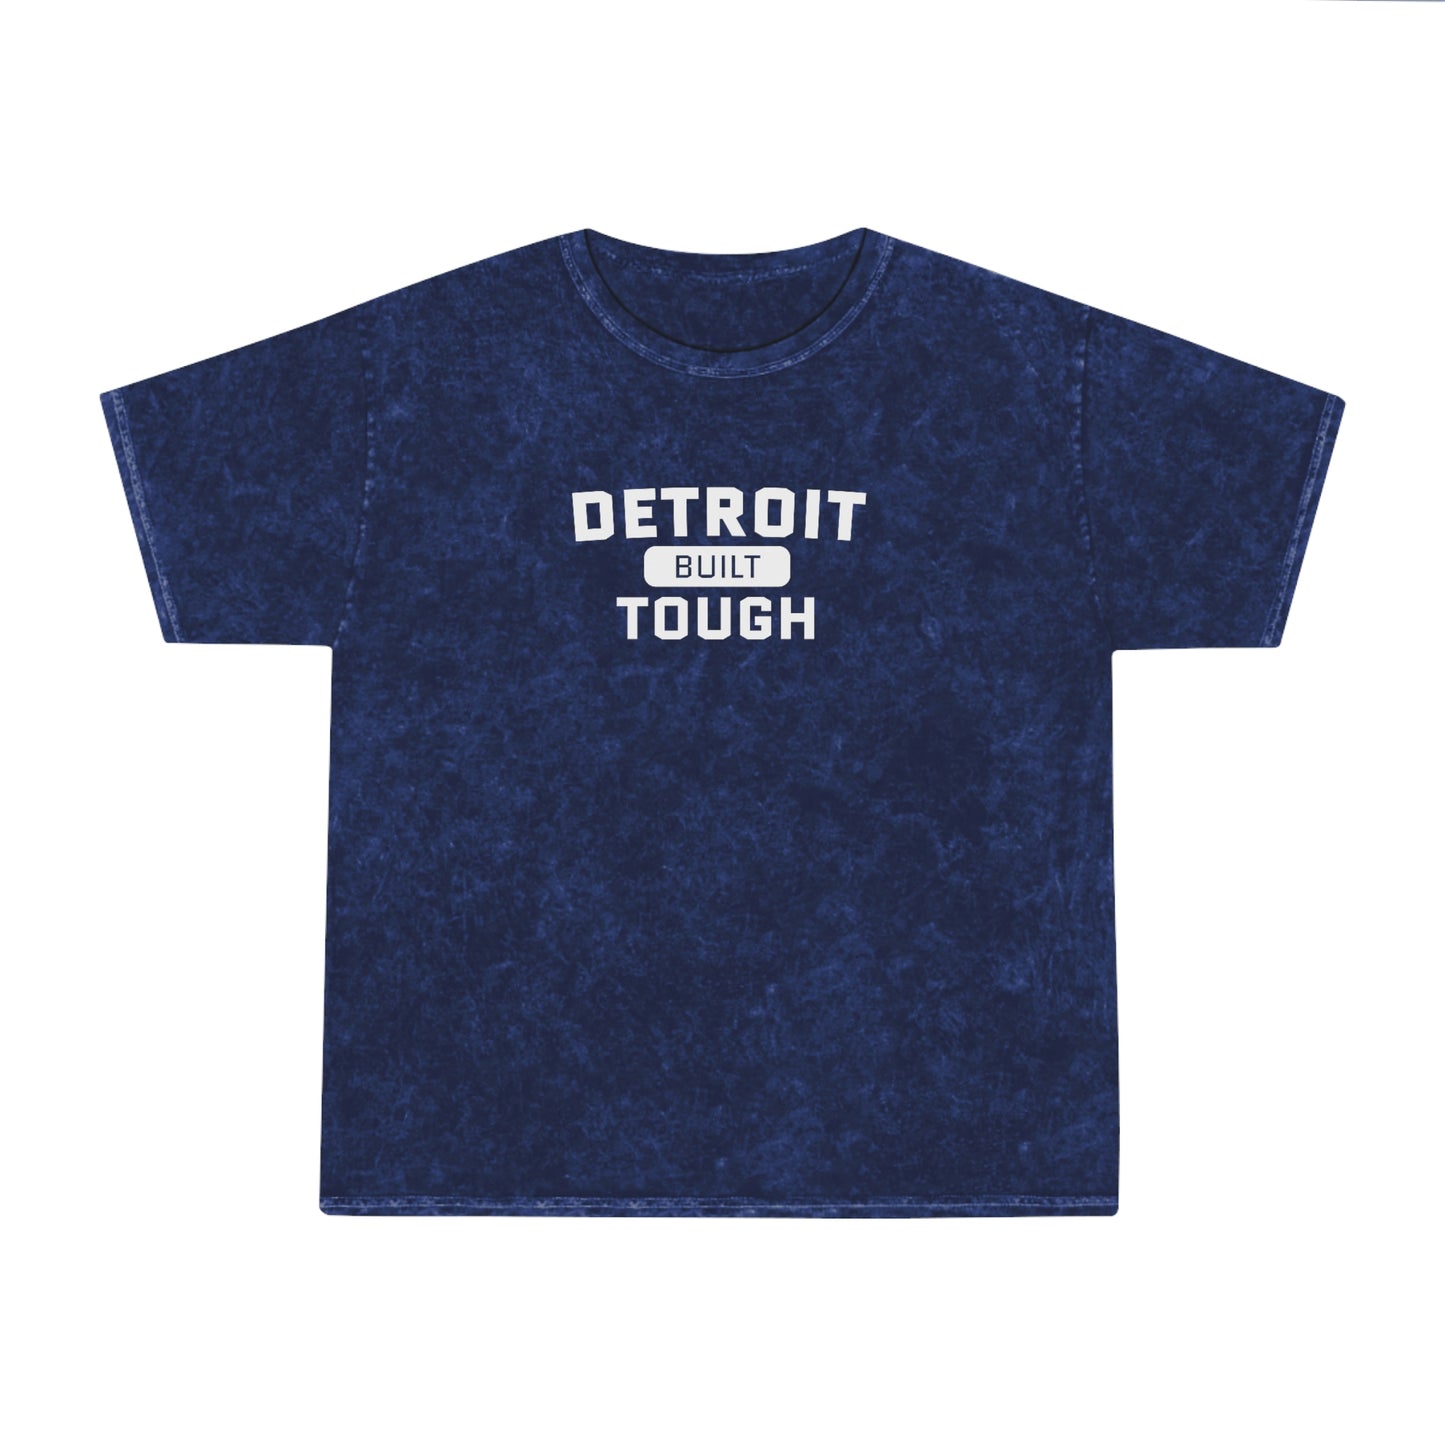 'Built Detroit Tough' Mineral Wash T-Shirt